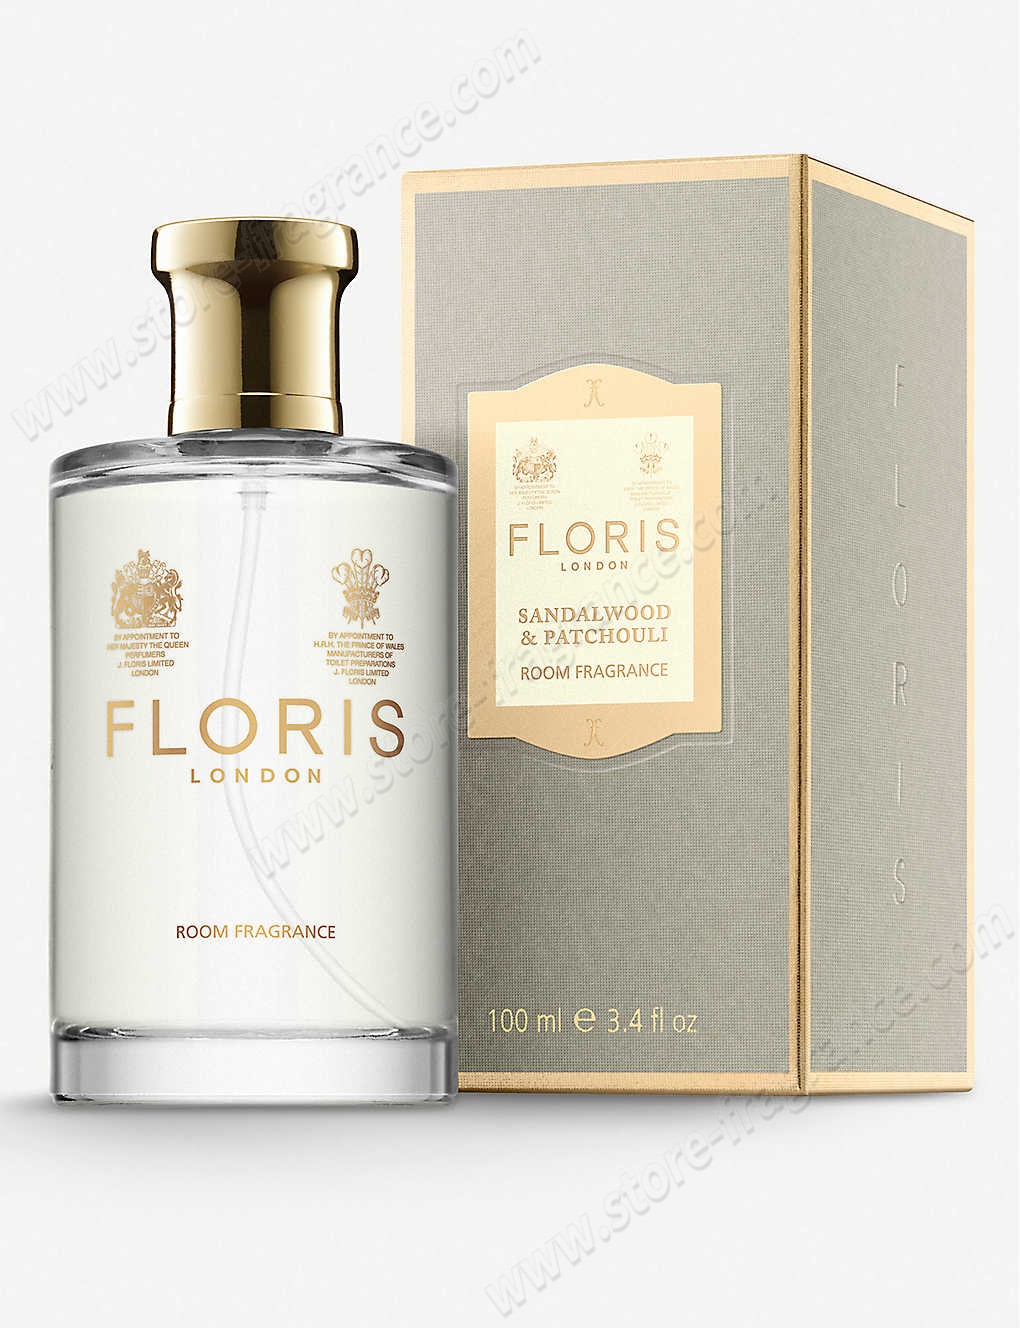 FLORIS/Sandalwood & patchouli room fragrance 100ml Limit Offer - -1